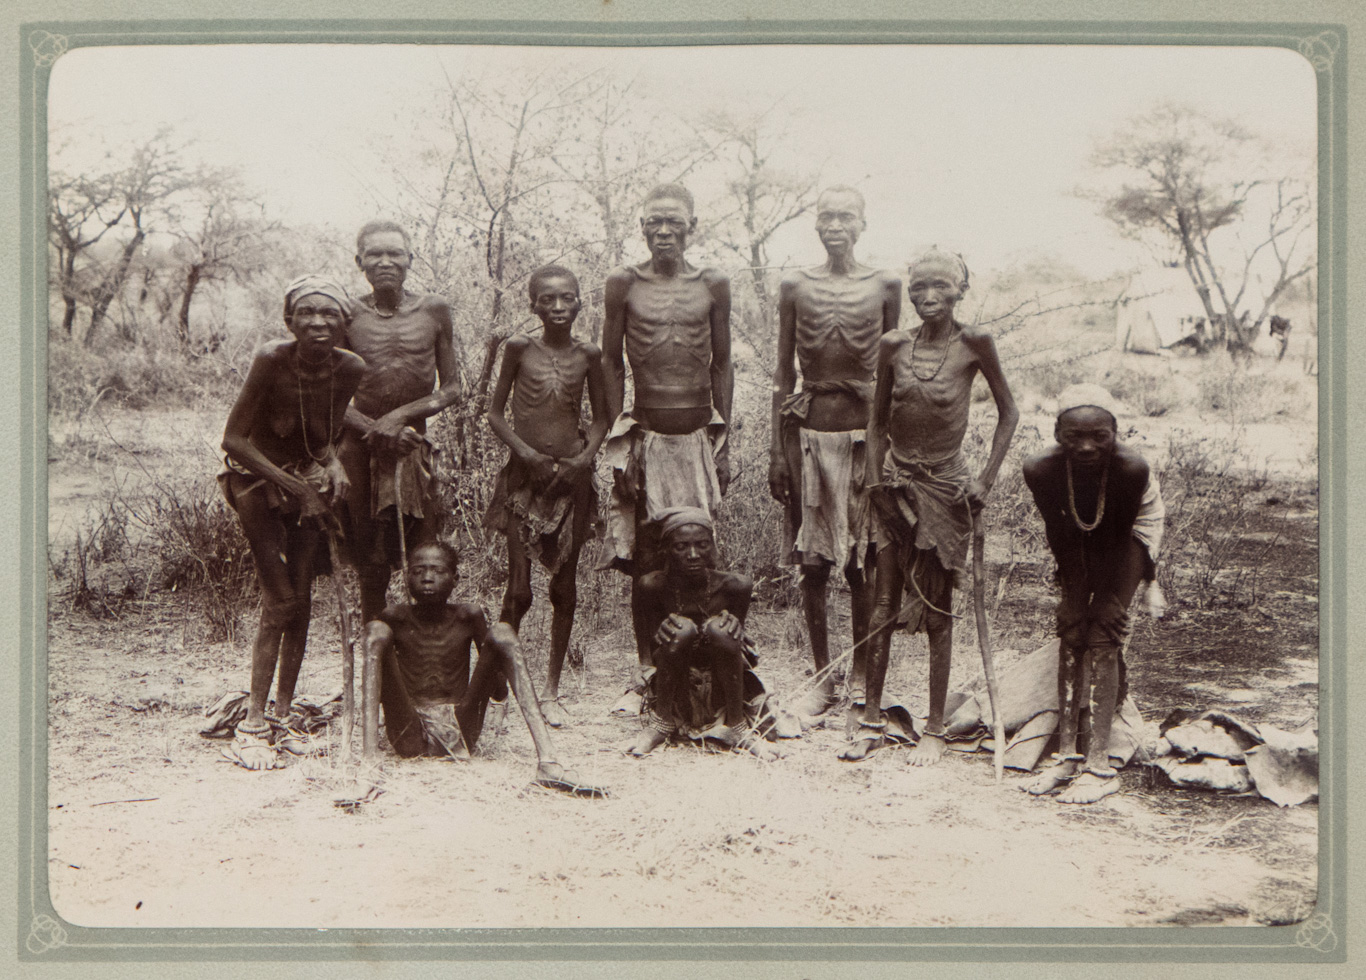 Une photo intitulée « Captured Hereros », prise vers 1904 par des colons allemands en Namibie. Photo | Musée historique allemand